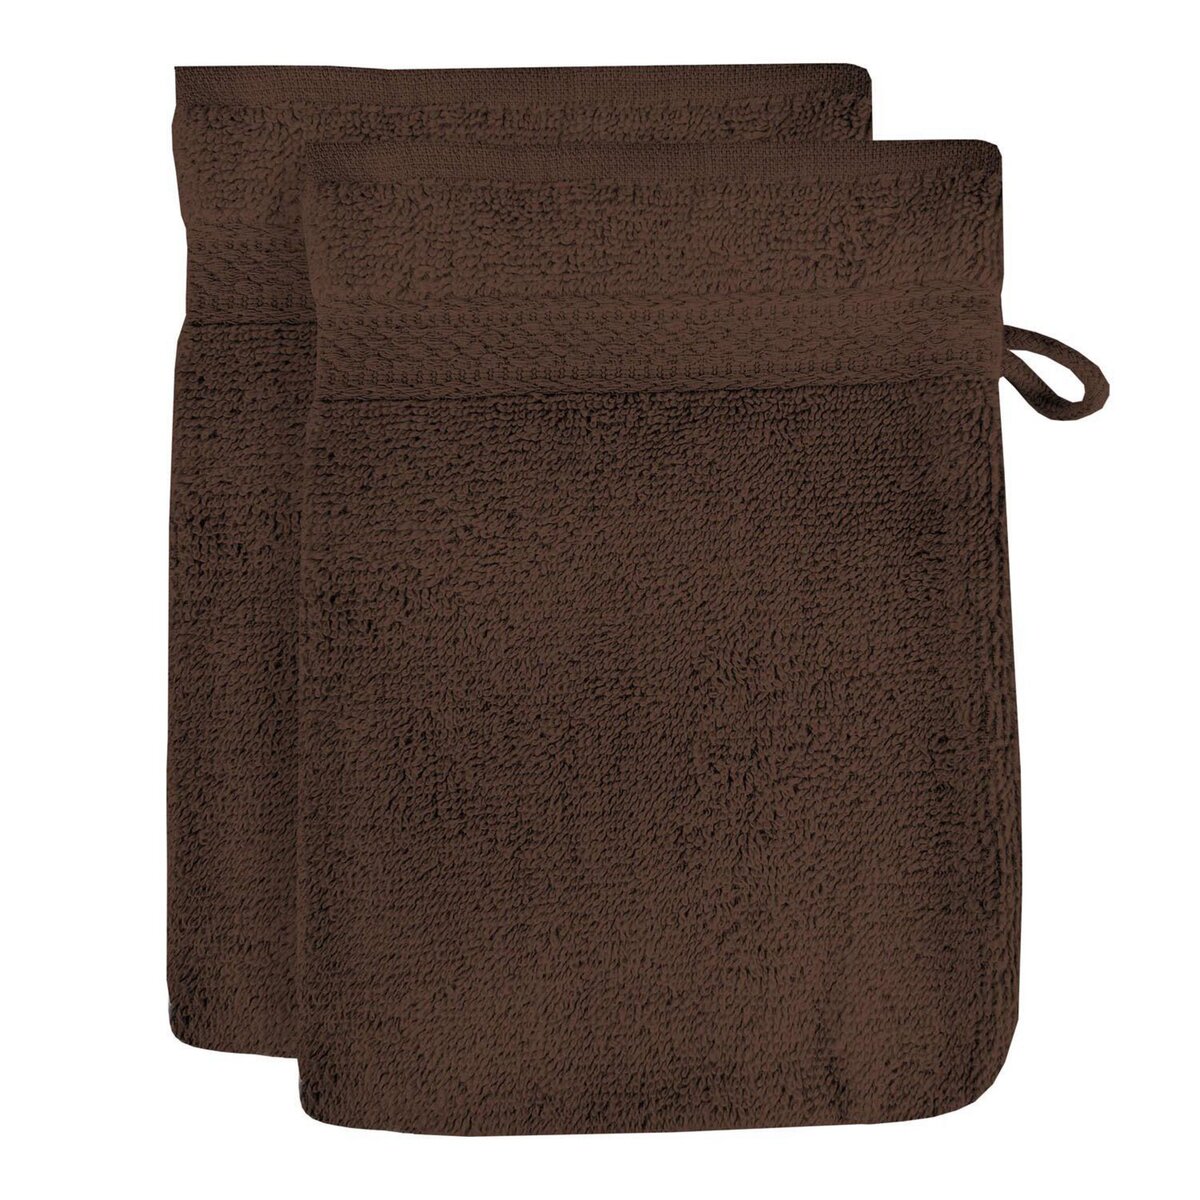 SOLEIL D'OCRE Lot de 2 gants de toilette en coton 500 gr/m2 16x21 cm LAGUNE brun, par Soleil d'ocre